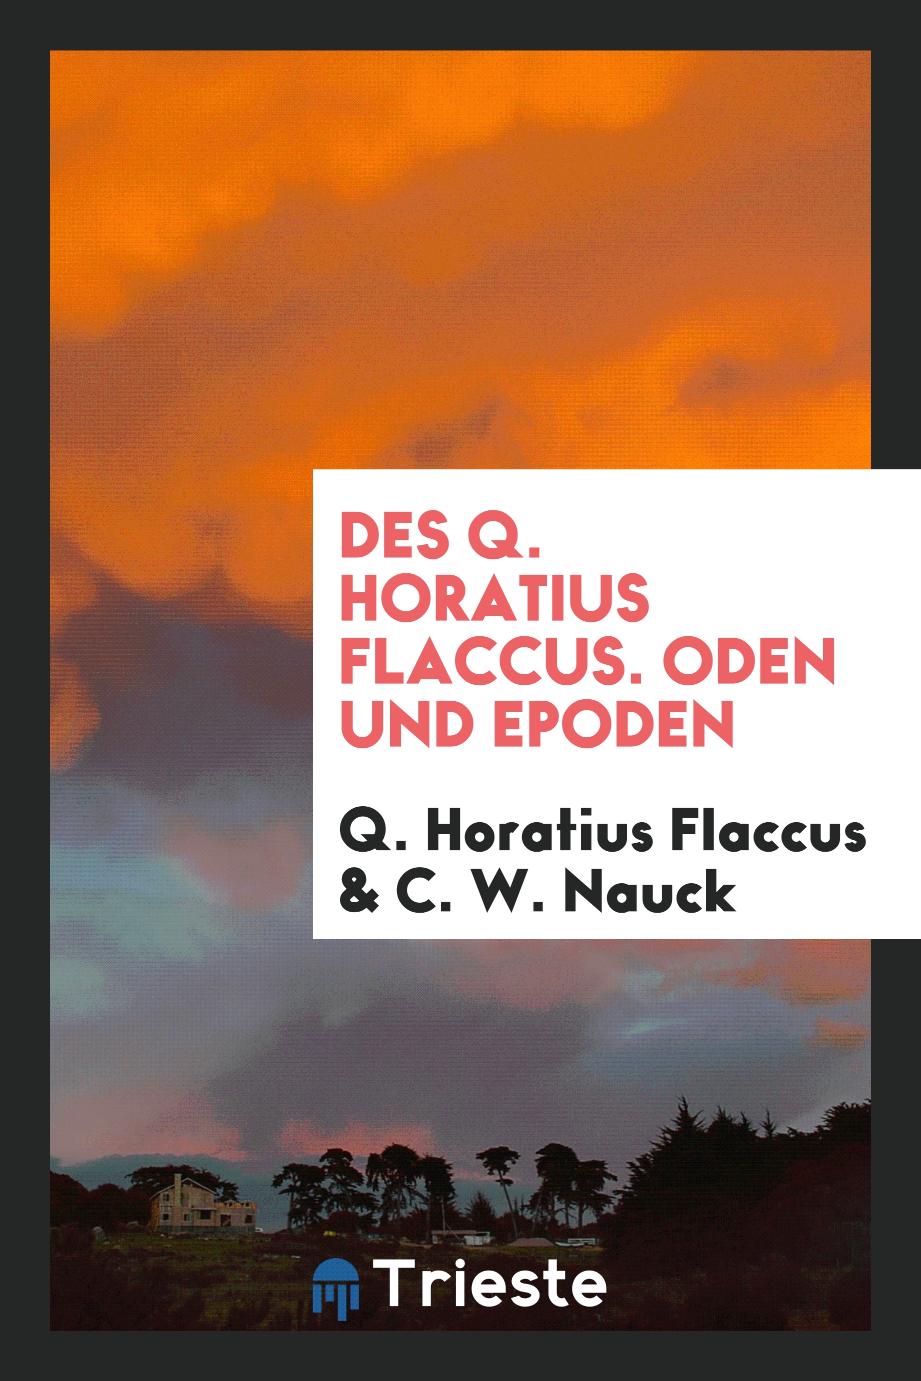 Des Q. Horatius Flaccus. Oden und Epoden